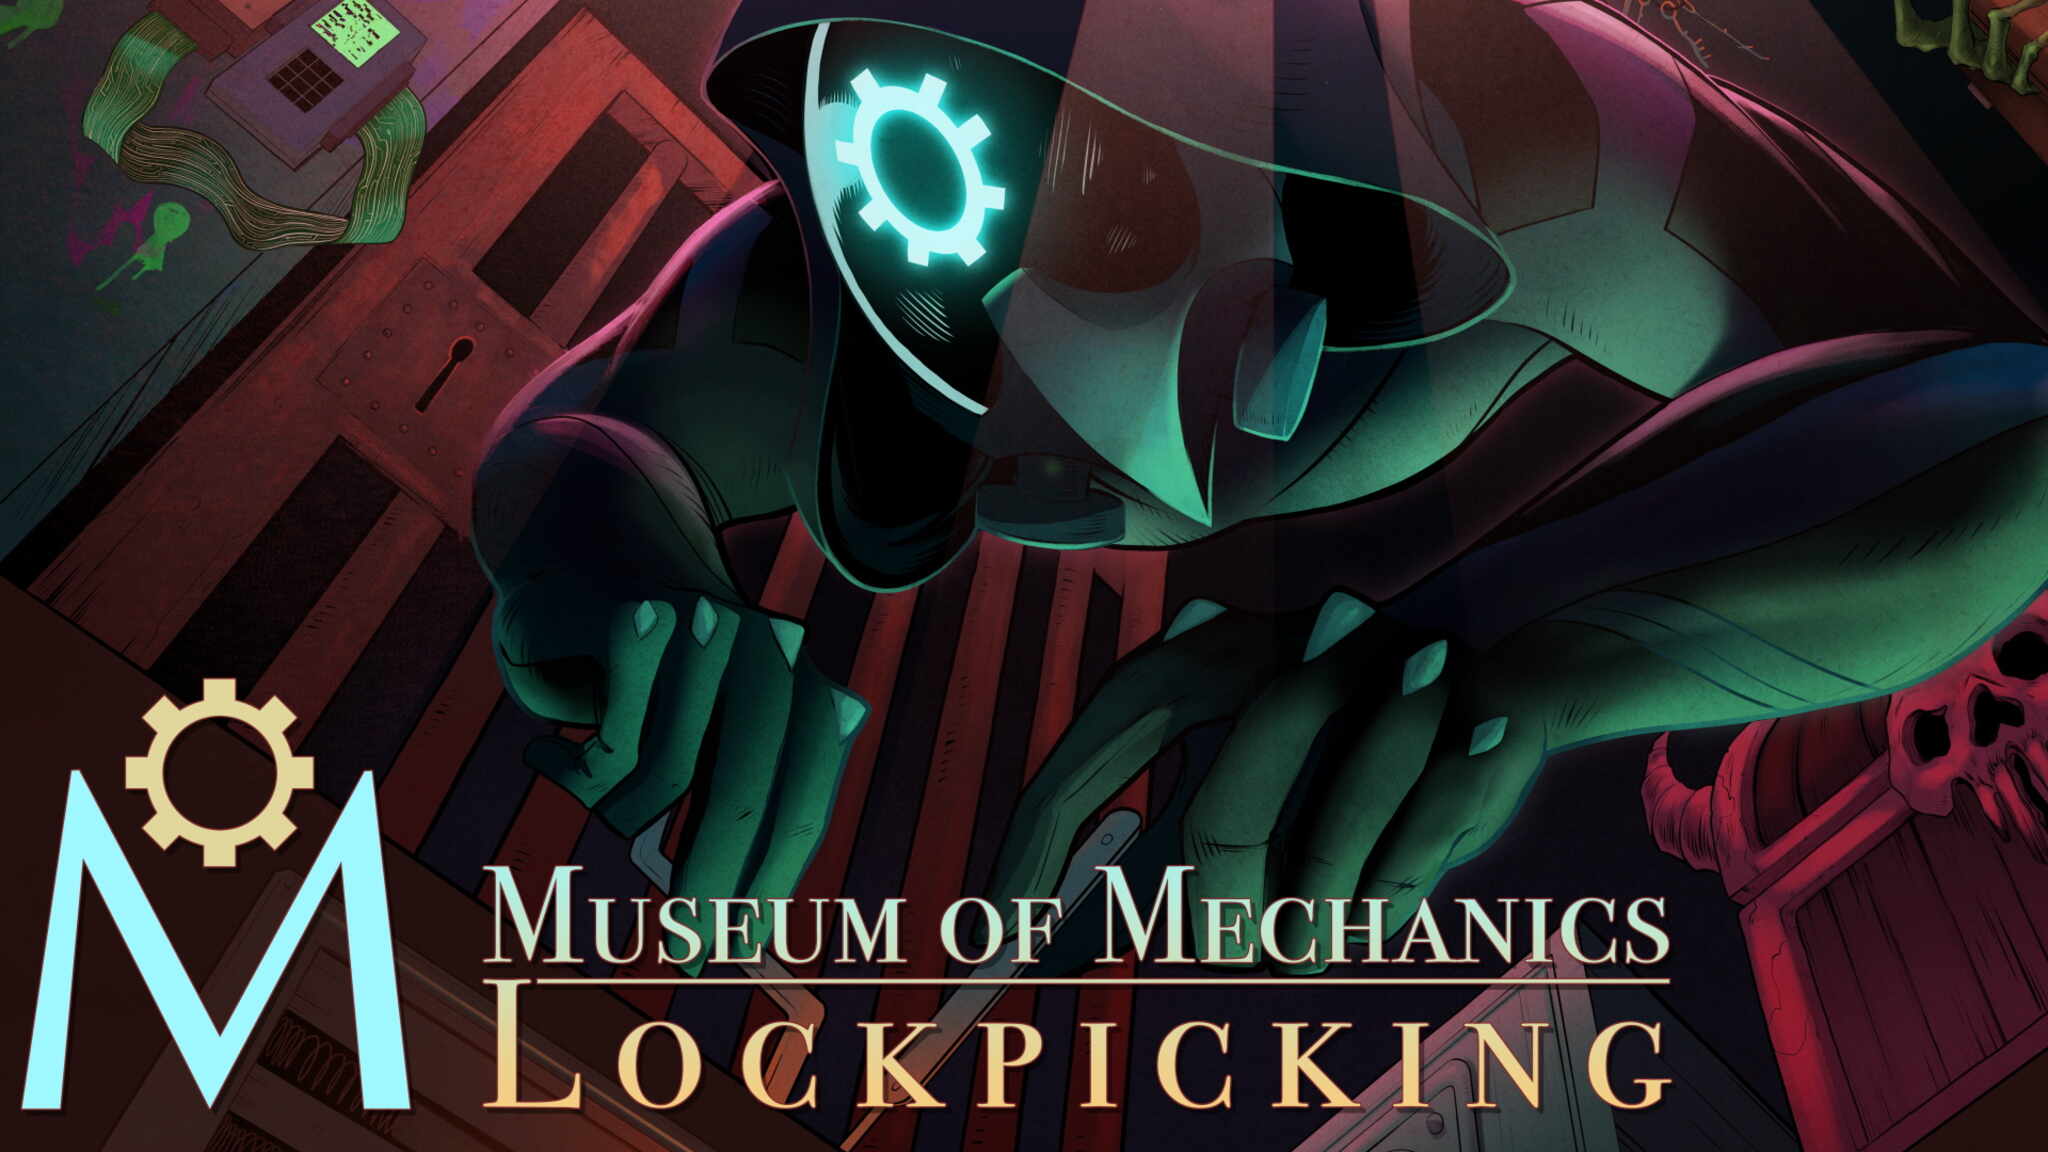 Museum of Mechanics: Lockpicking